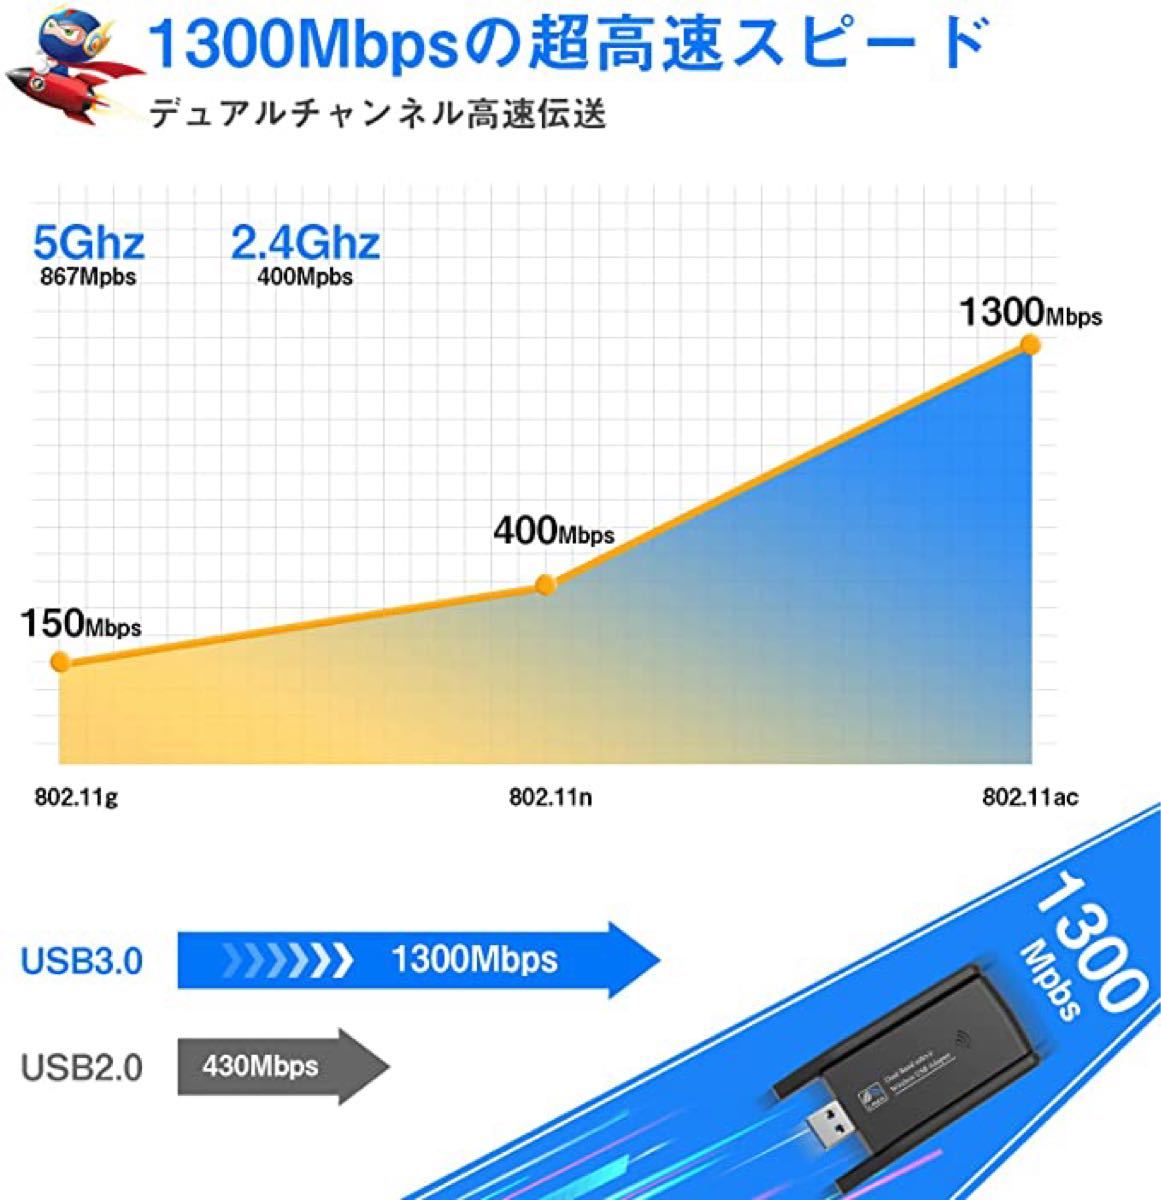 【新品】無線lan 子機 KIMWOOD wifi usb 1300Mbps